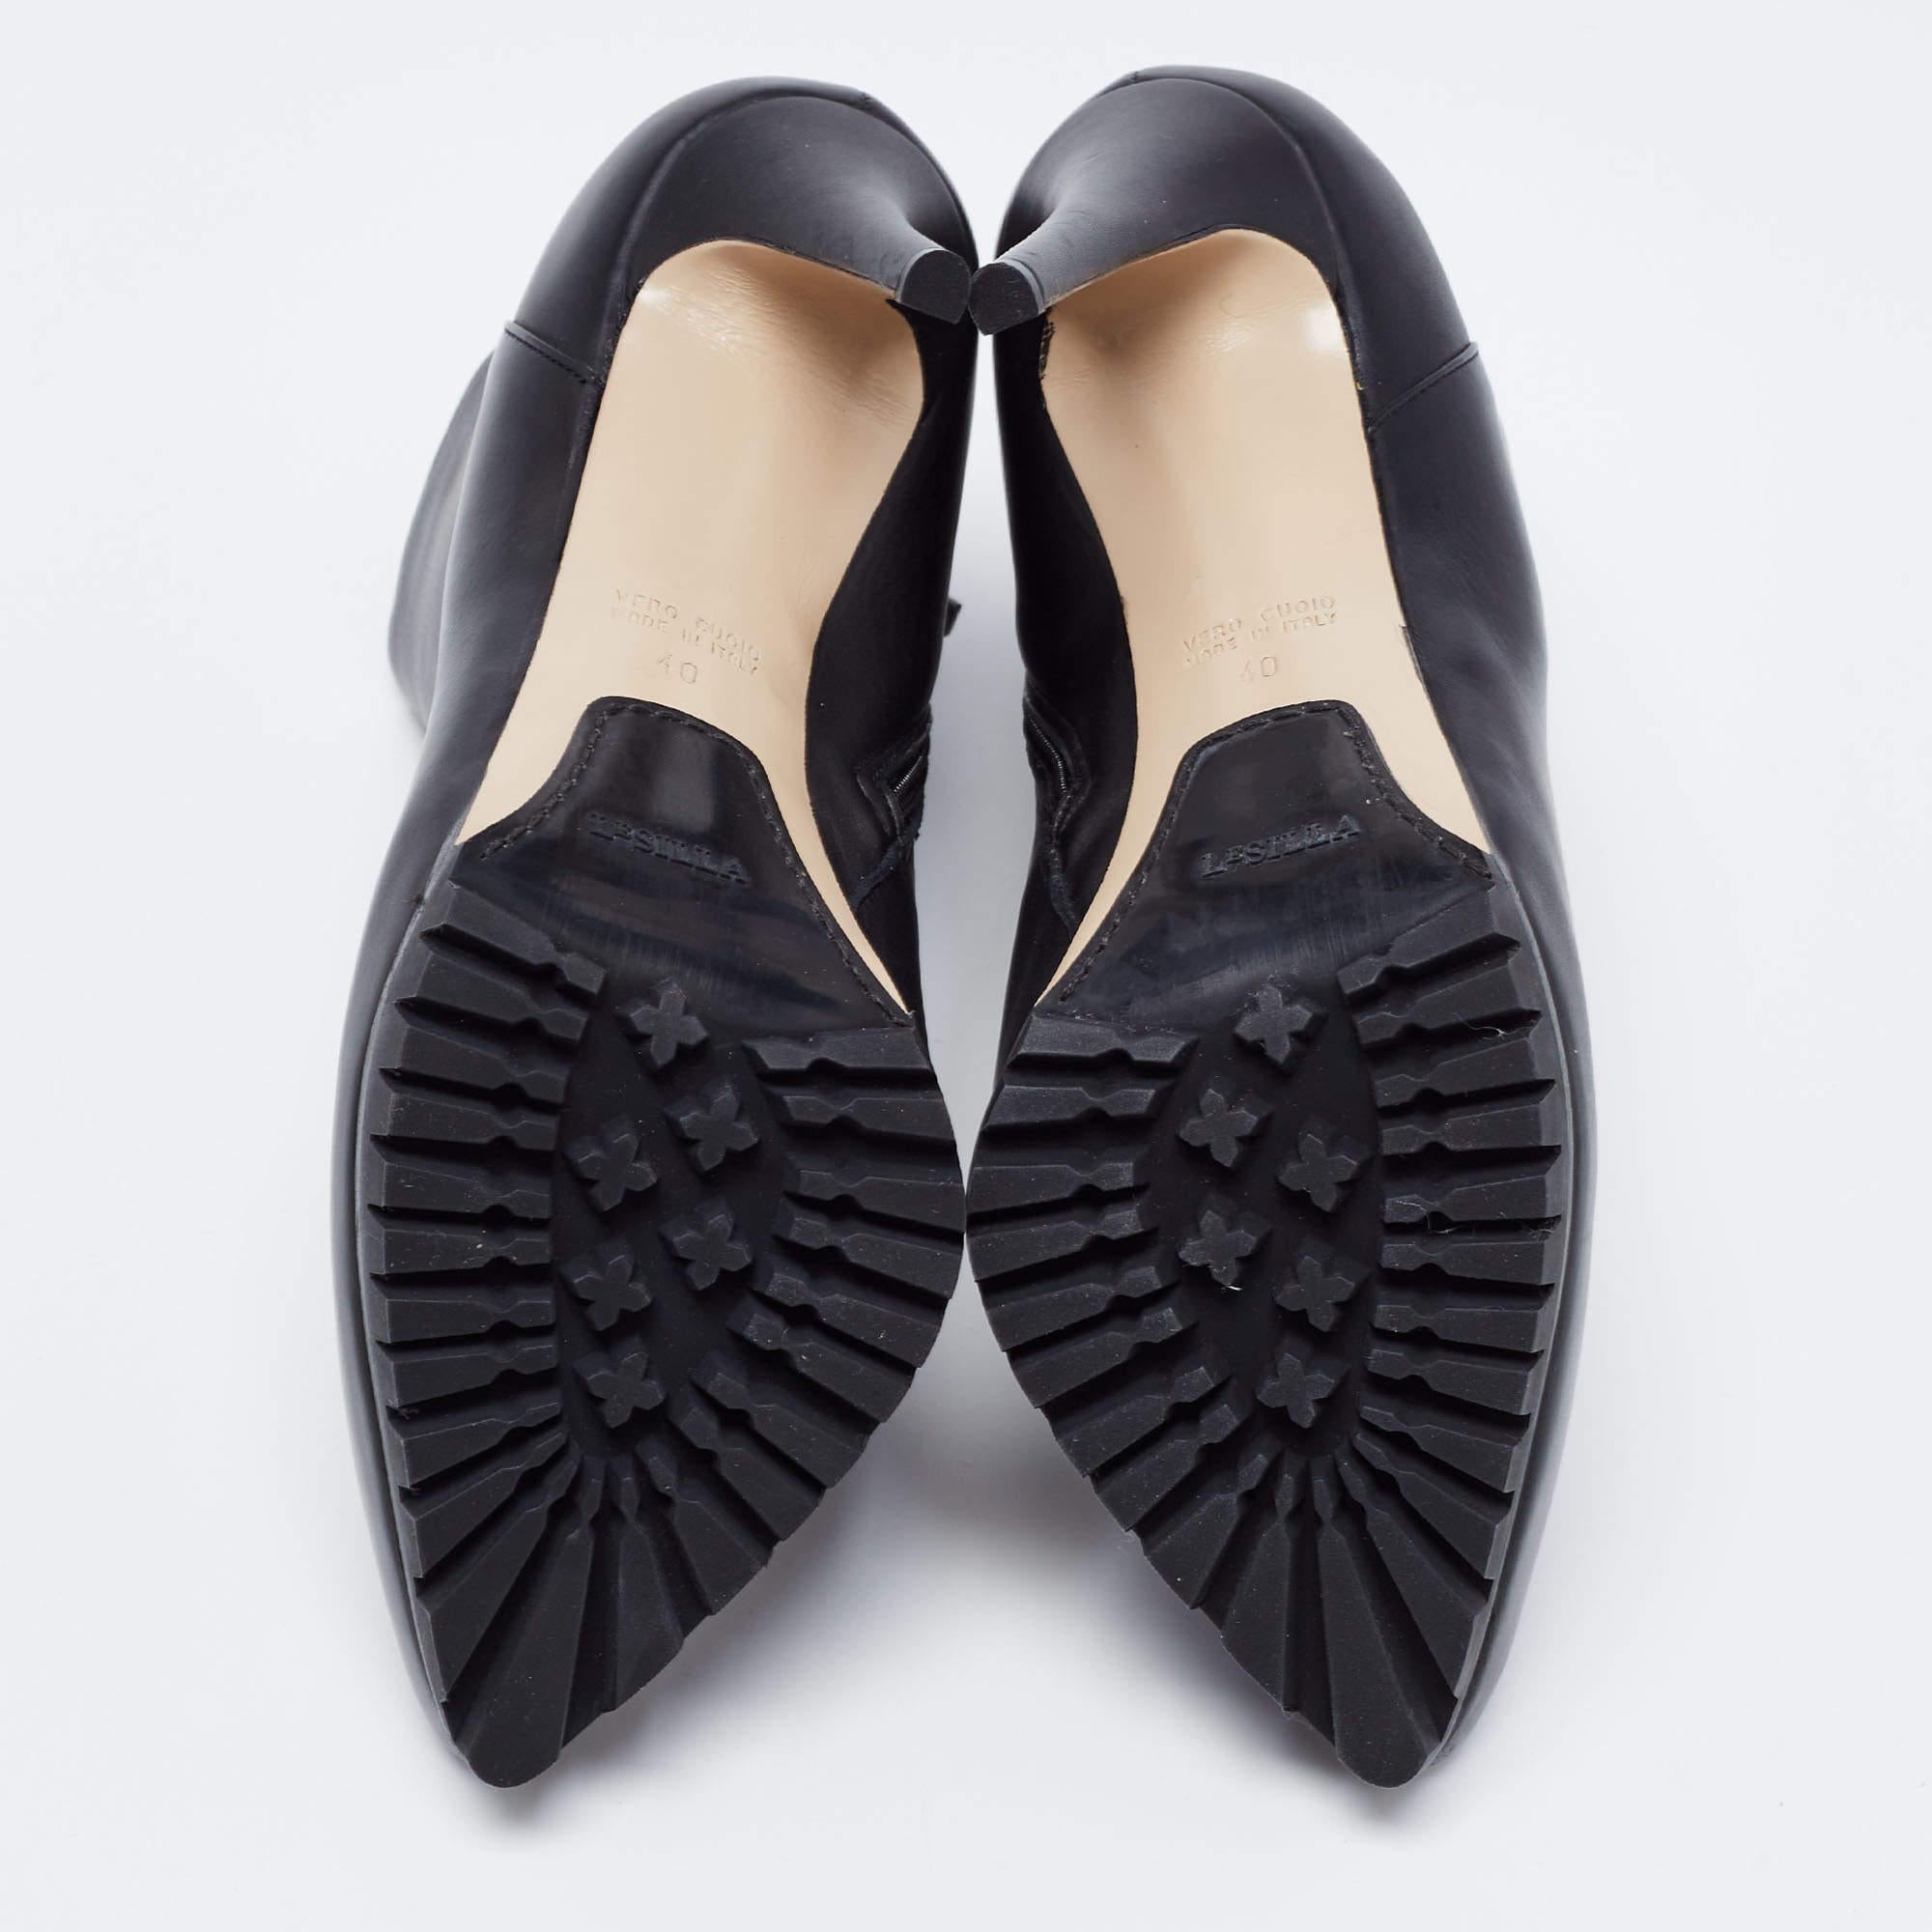 Women's Le Silla Black Leather Platform Ankle Boots Size 40